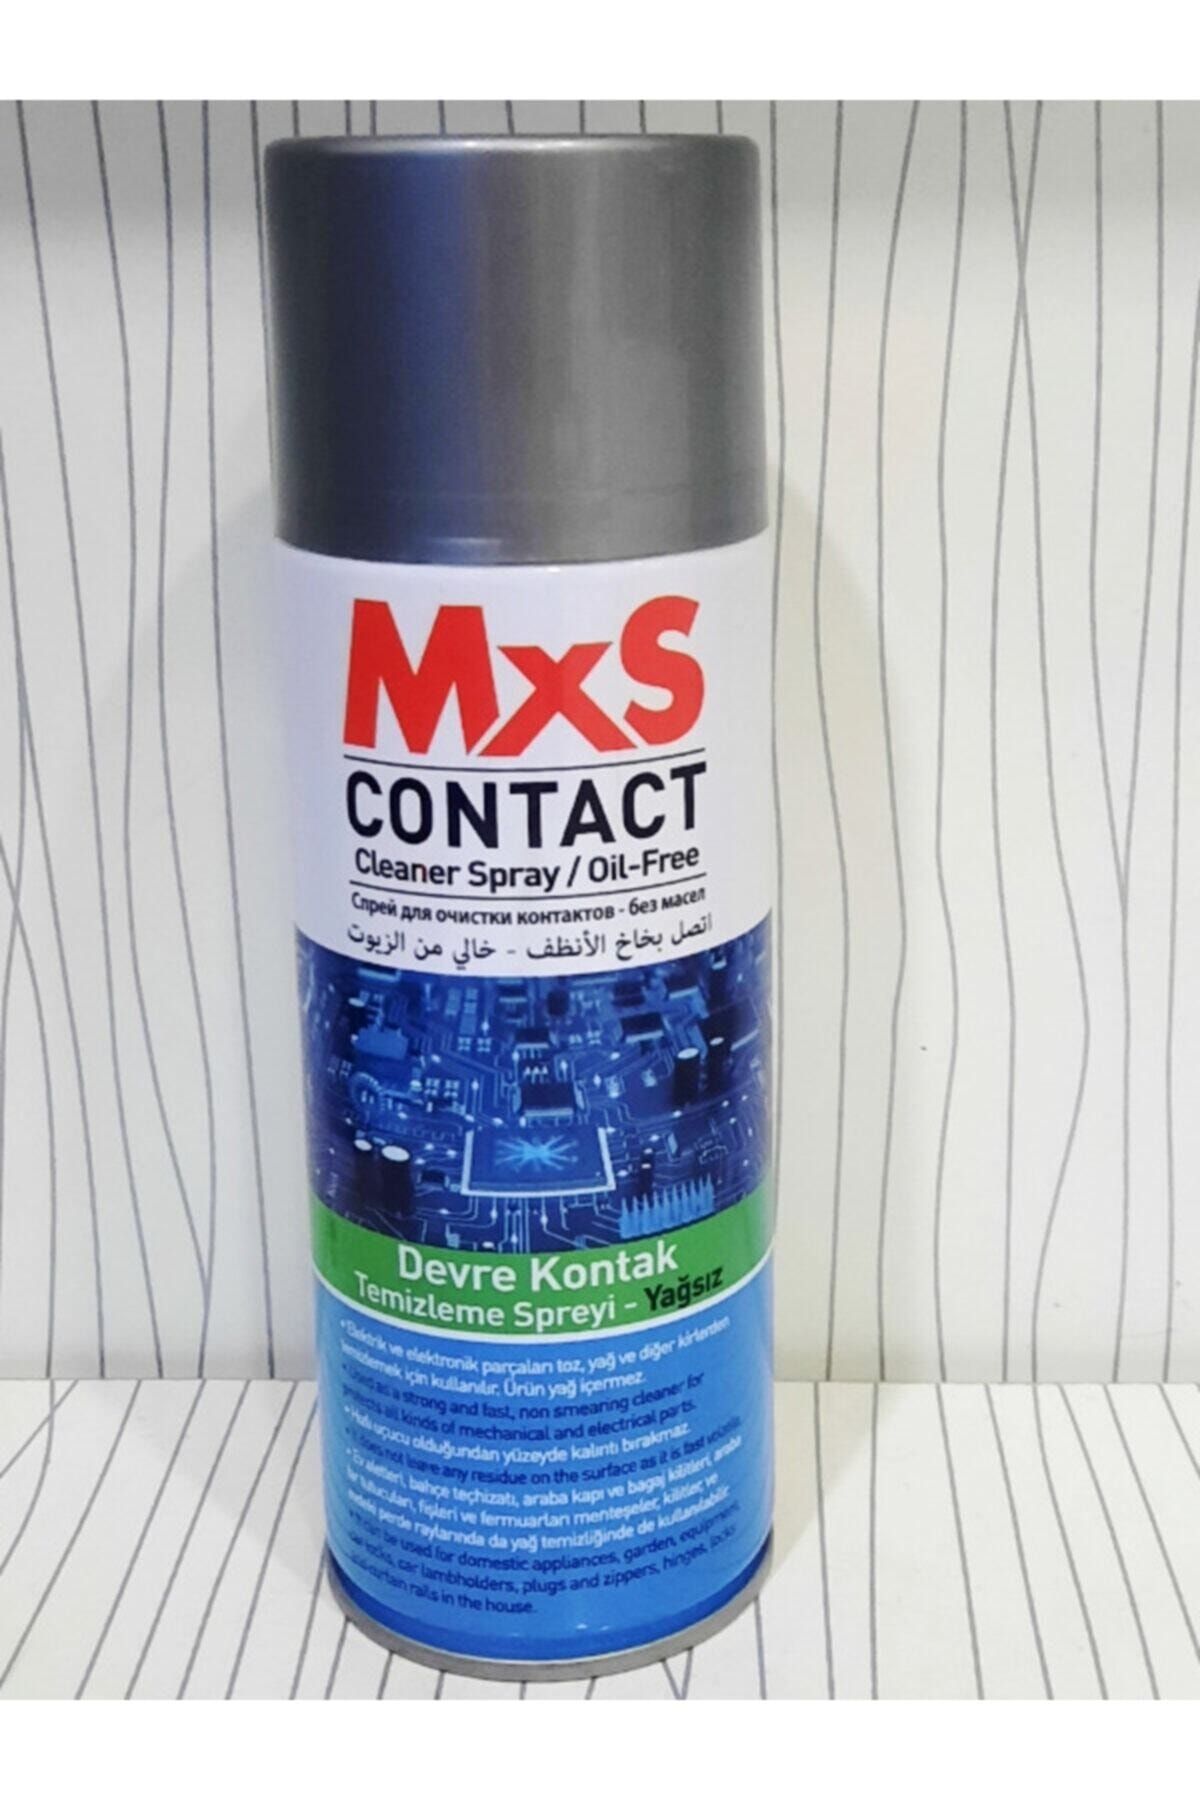 MxS Devre Kontak Temizleme Spreyi 400ml Yağsız